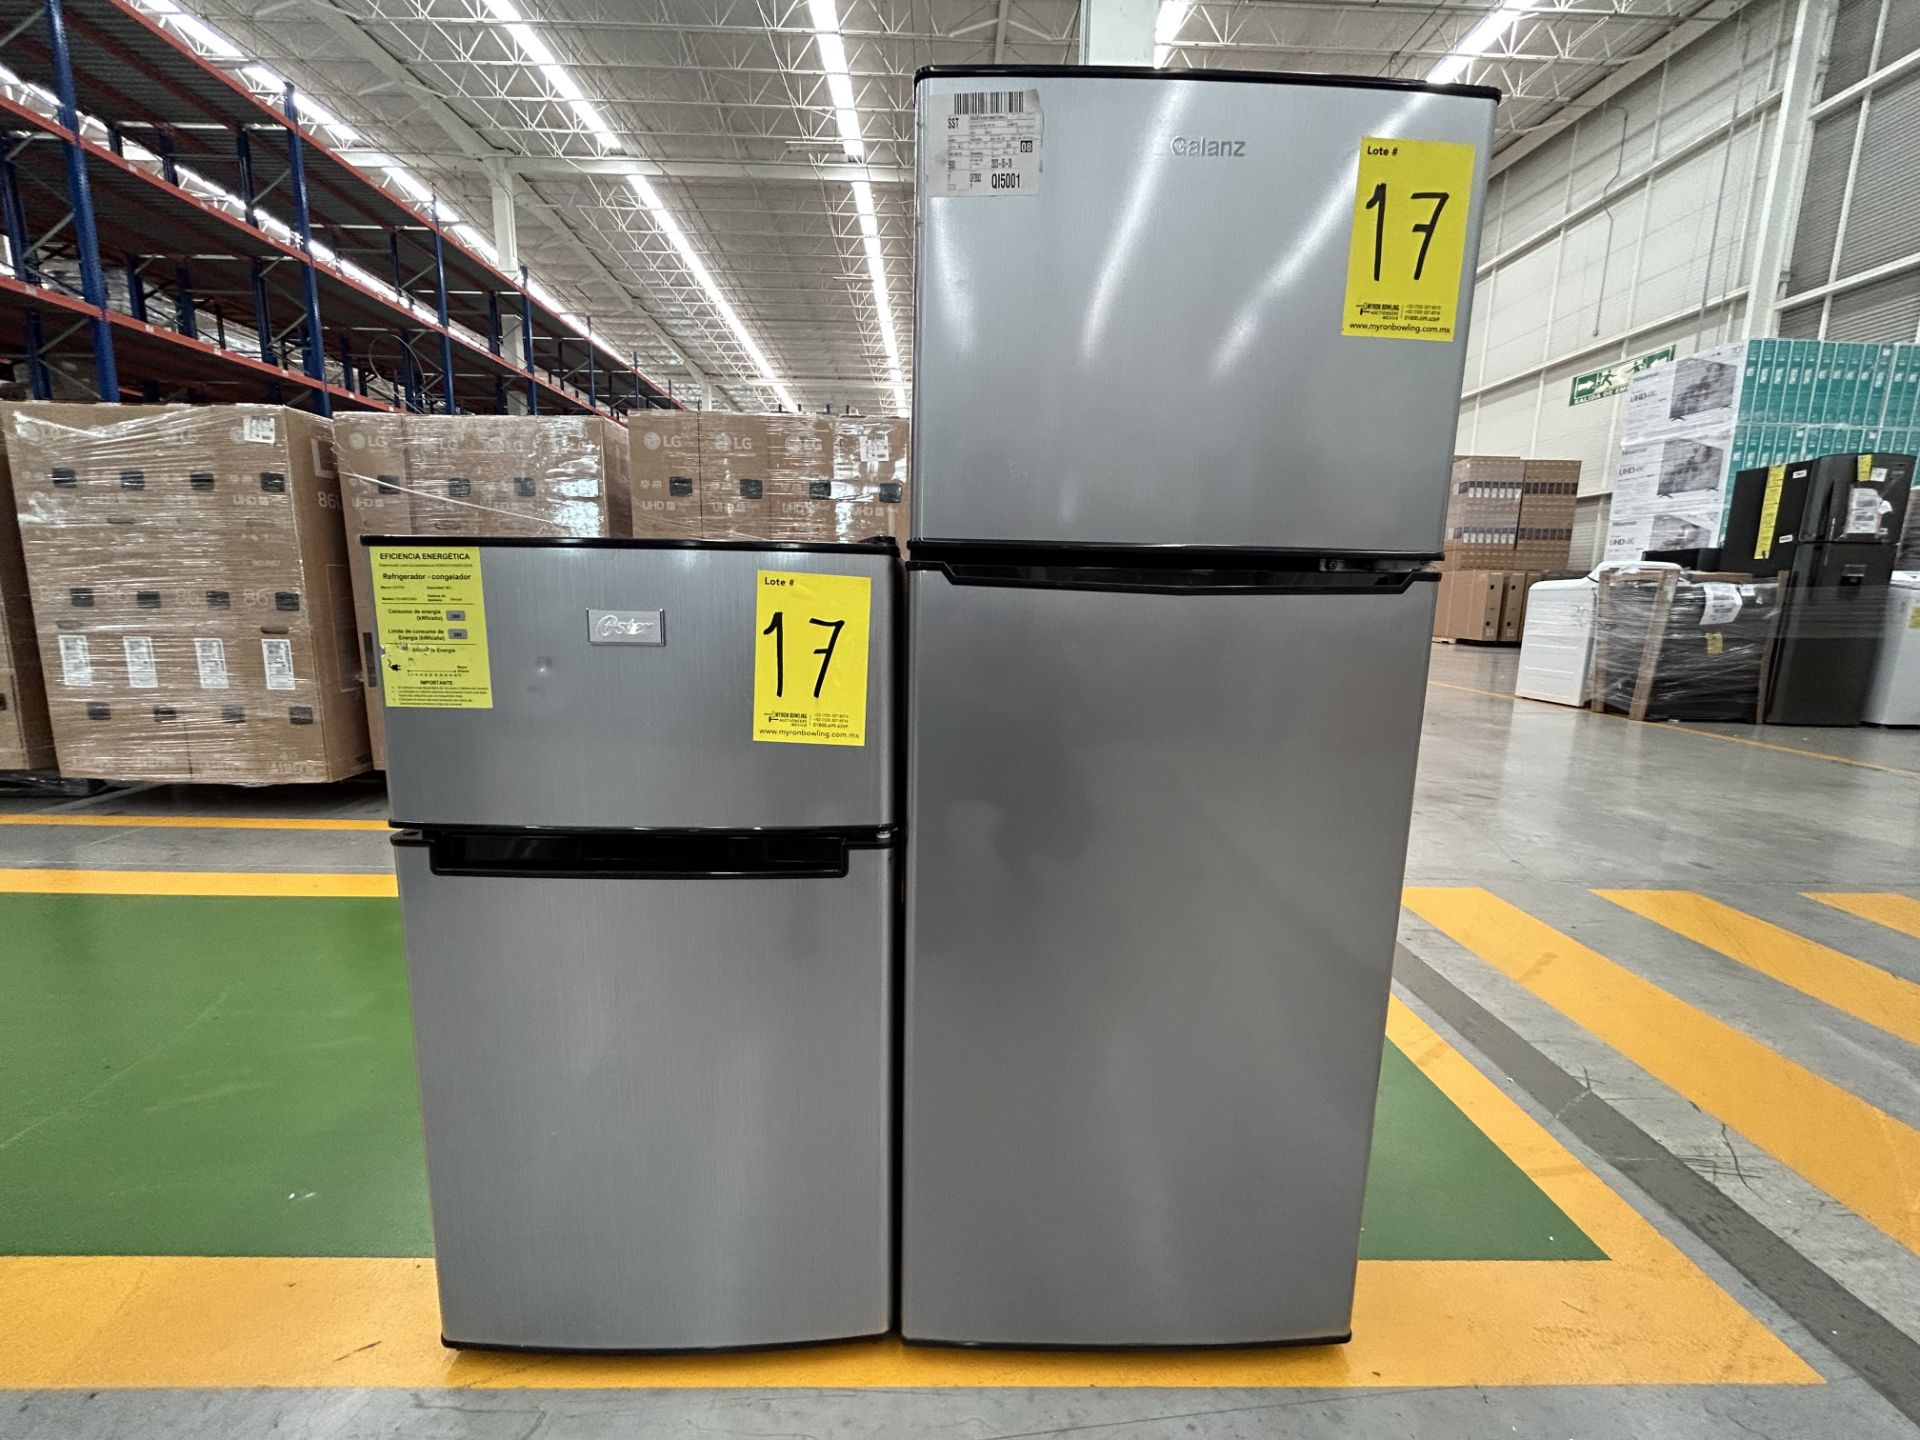 Lote de 2 refrigeradores contiene: 1 refrigerador Marca GALANZ, Modelo GLR55TS1, Serie ND, Color GR